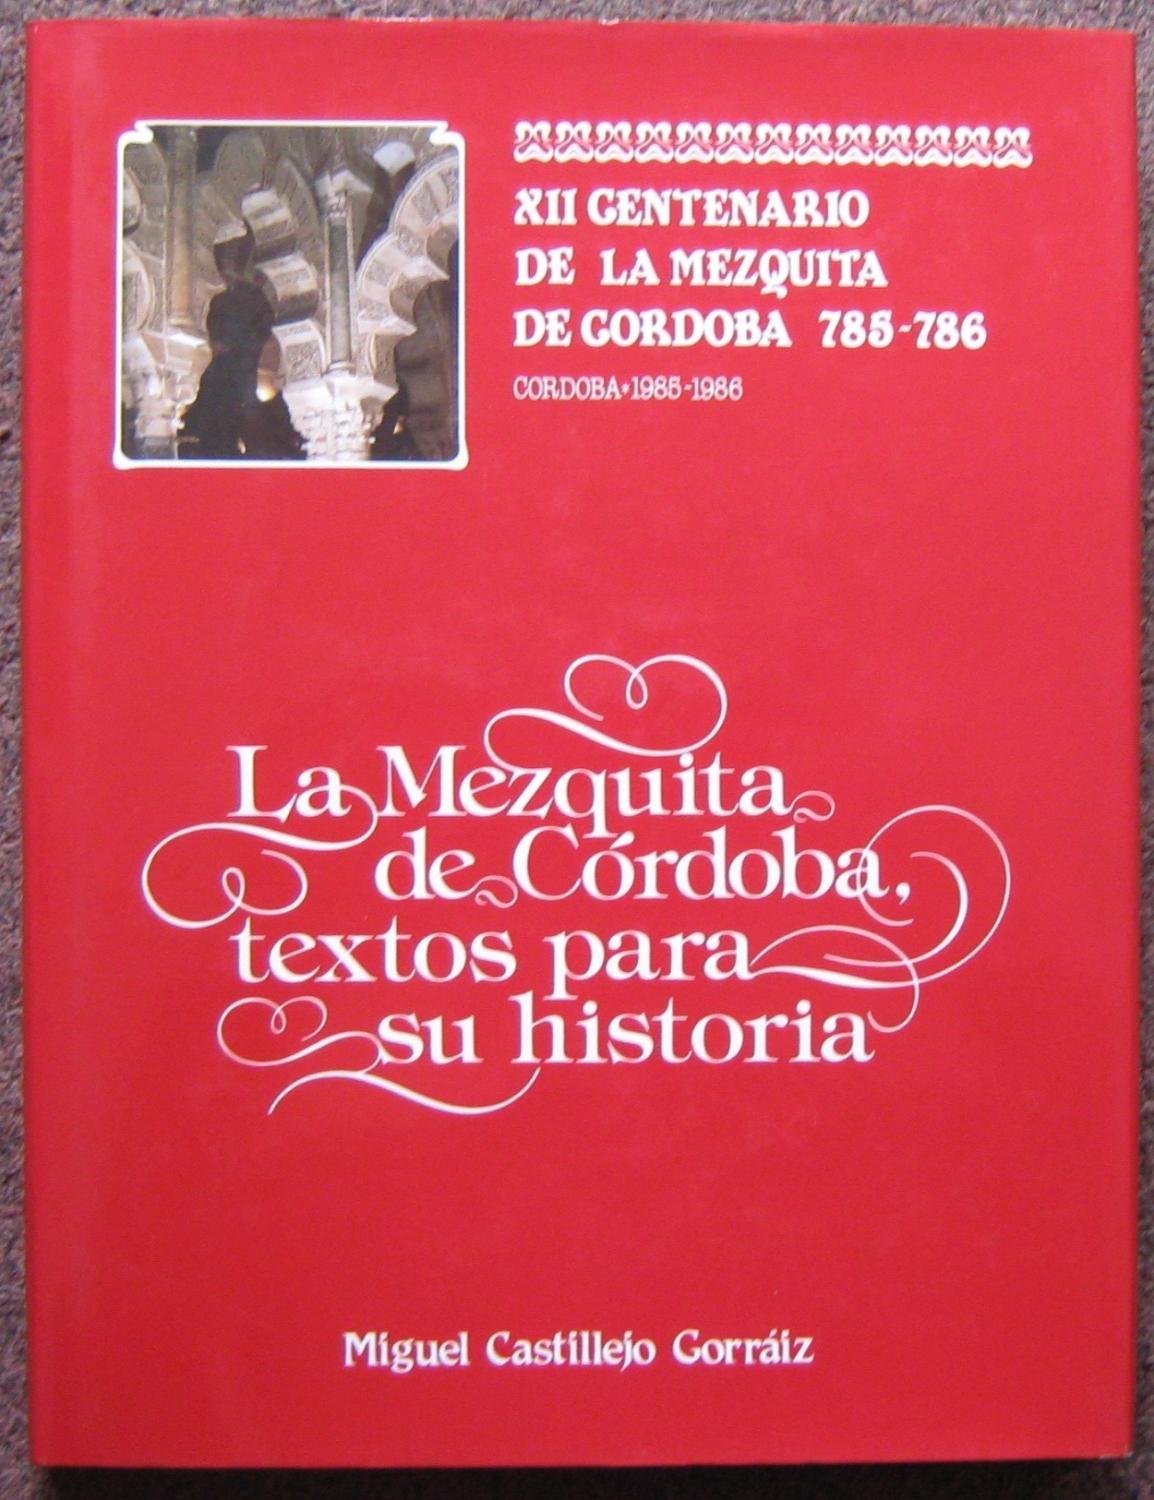 La Mezquita de Córdoba, textos para su historia "XII Centenario de la Mezquita de Córdoba 785-786". 